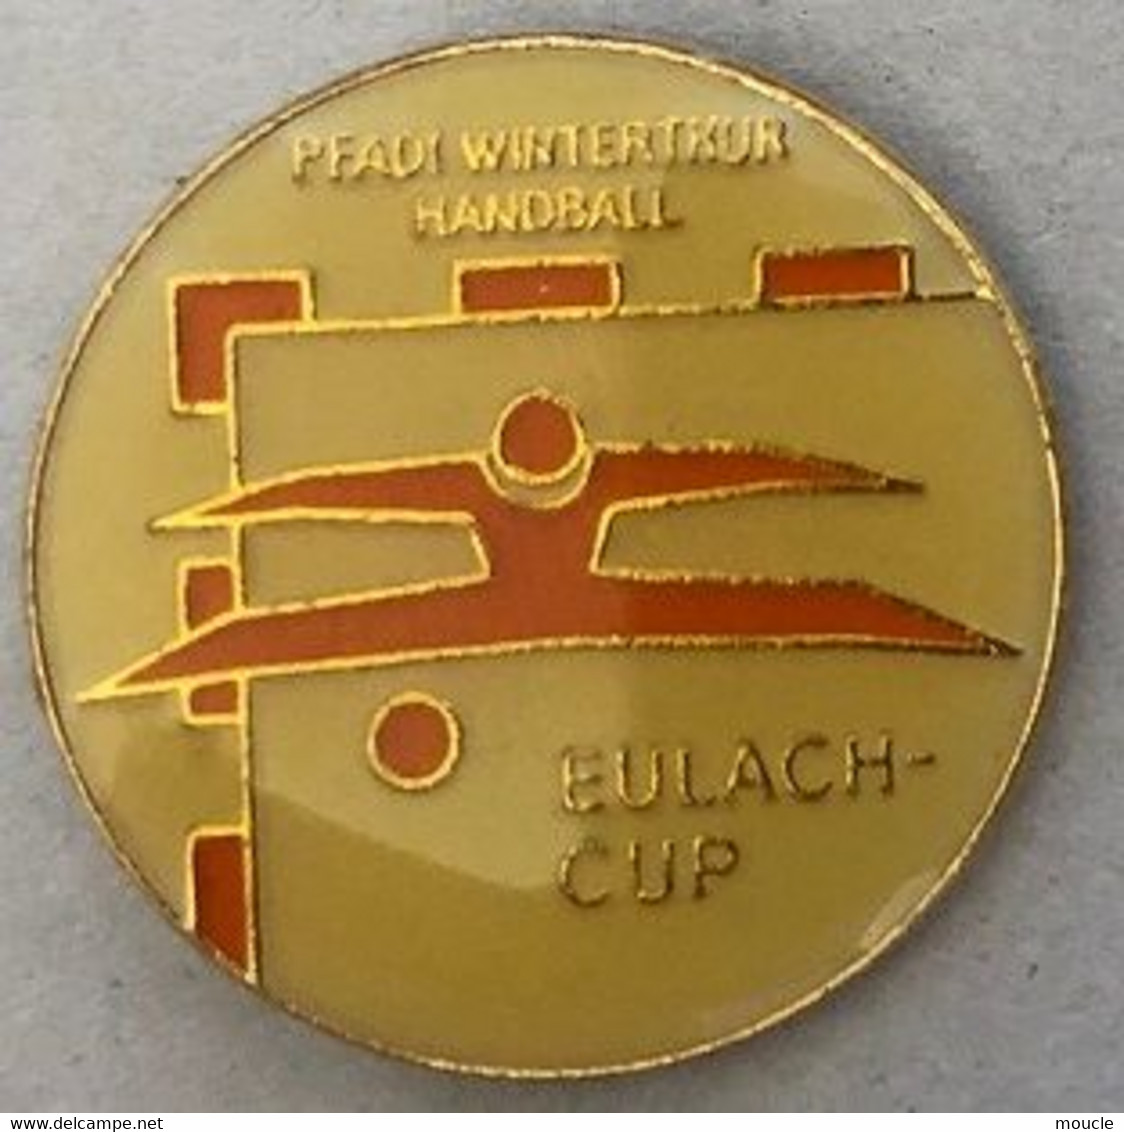 PFADI WINTERTHUR HANDBALL - WINTERTHOUR - CANTON DE ZURICH - SUISSE - SCHWEIZ - SWITZERLAND - EULACH CUP -  (27) - Handbal